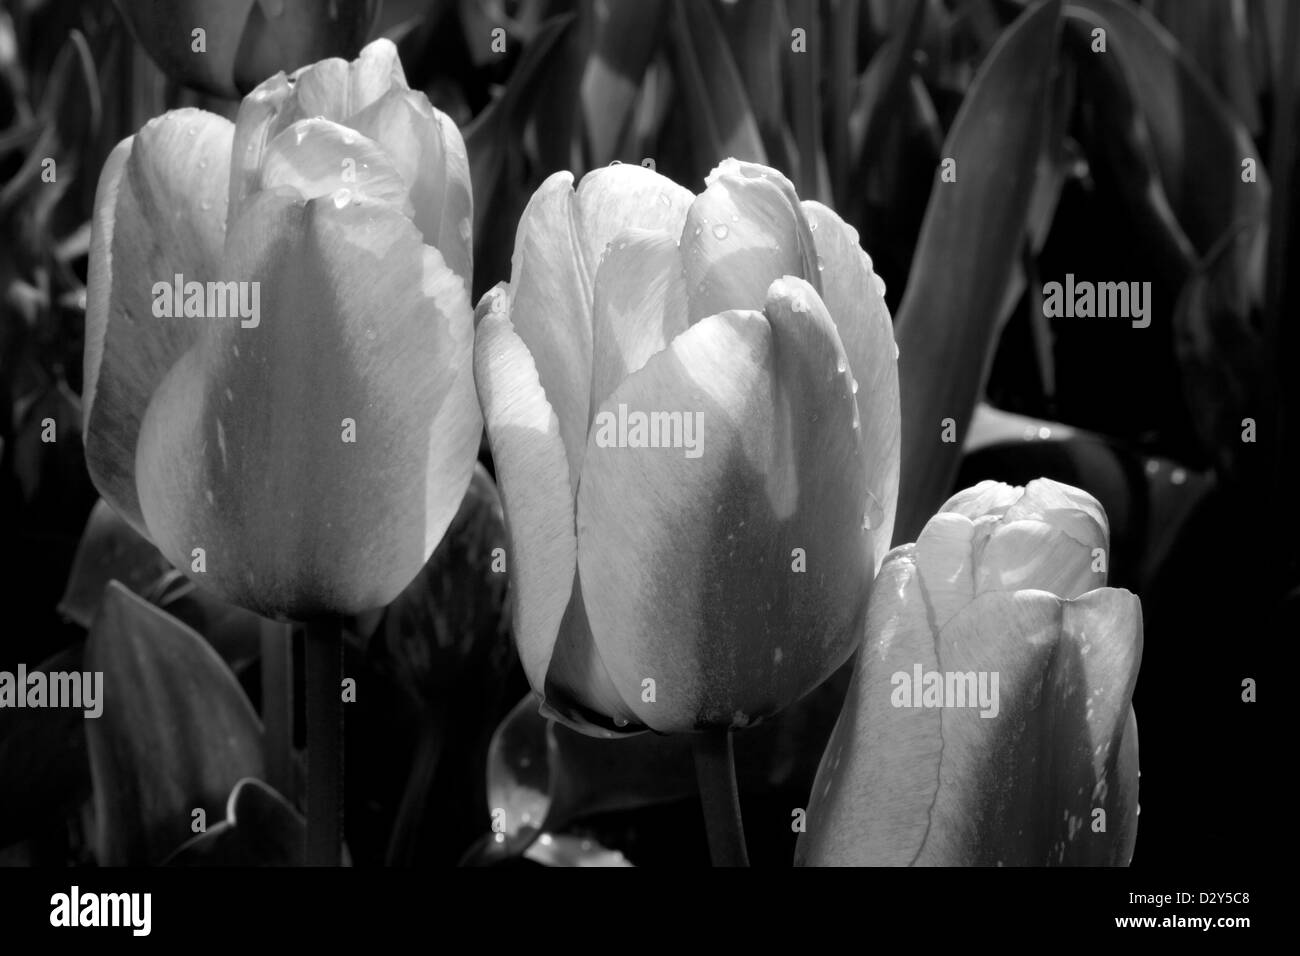 WA04114-00...Washington - i tulipani fioriti nei campi del Skagit River Delta vicino a Mount Vernon. Foto Stock